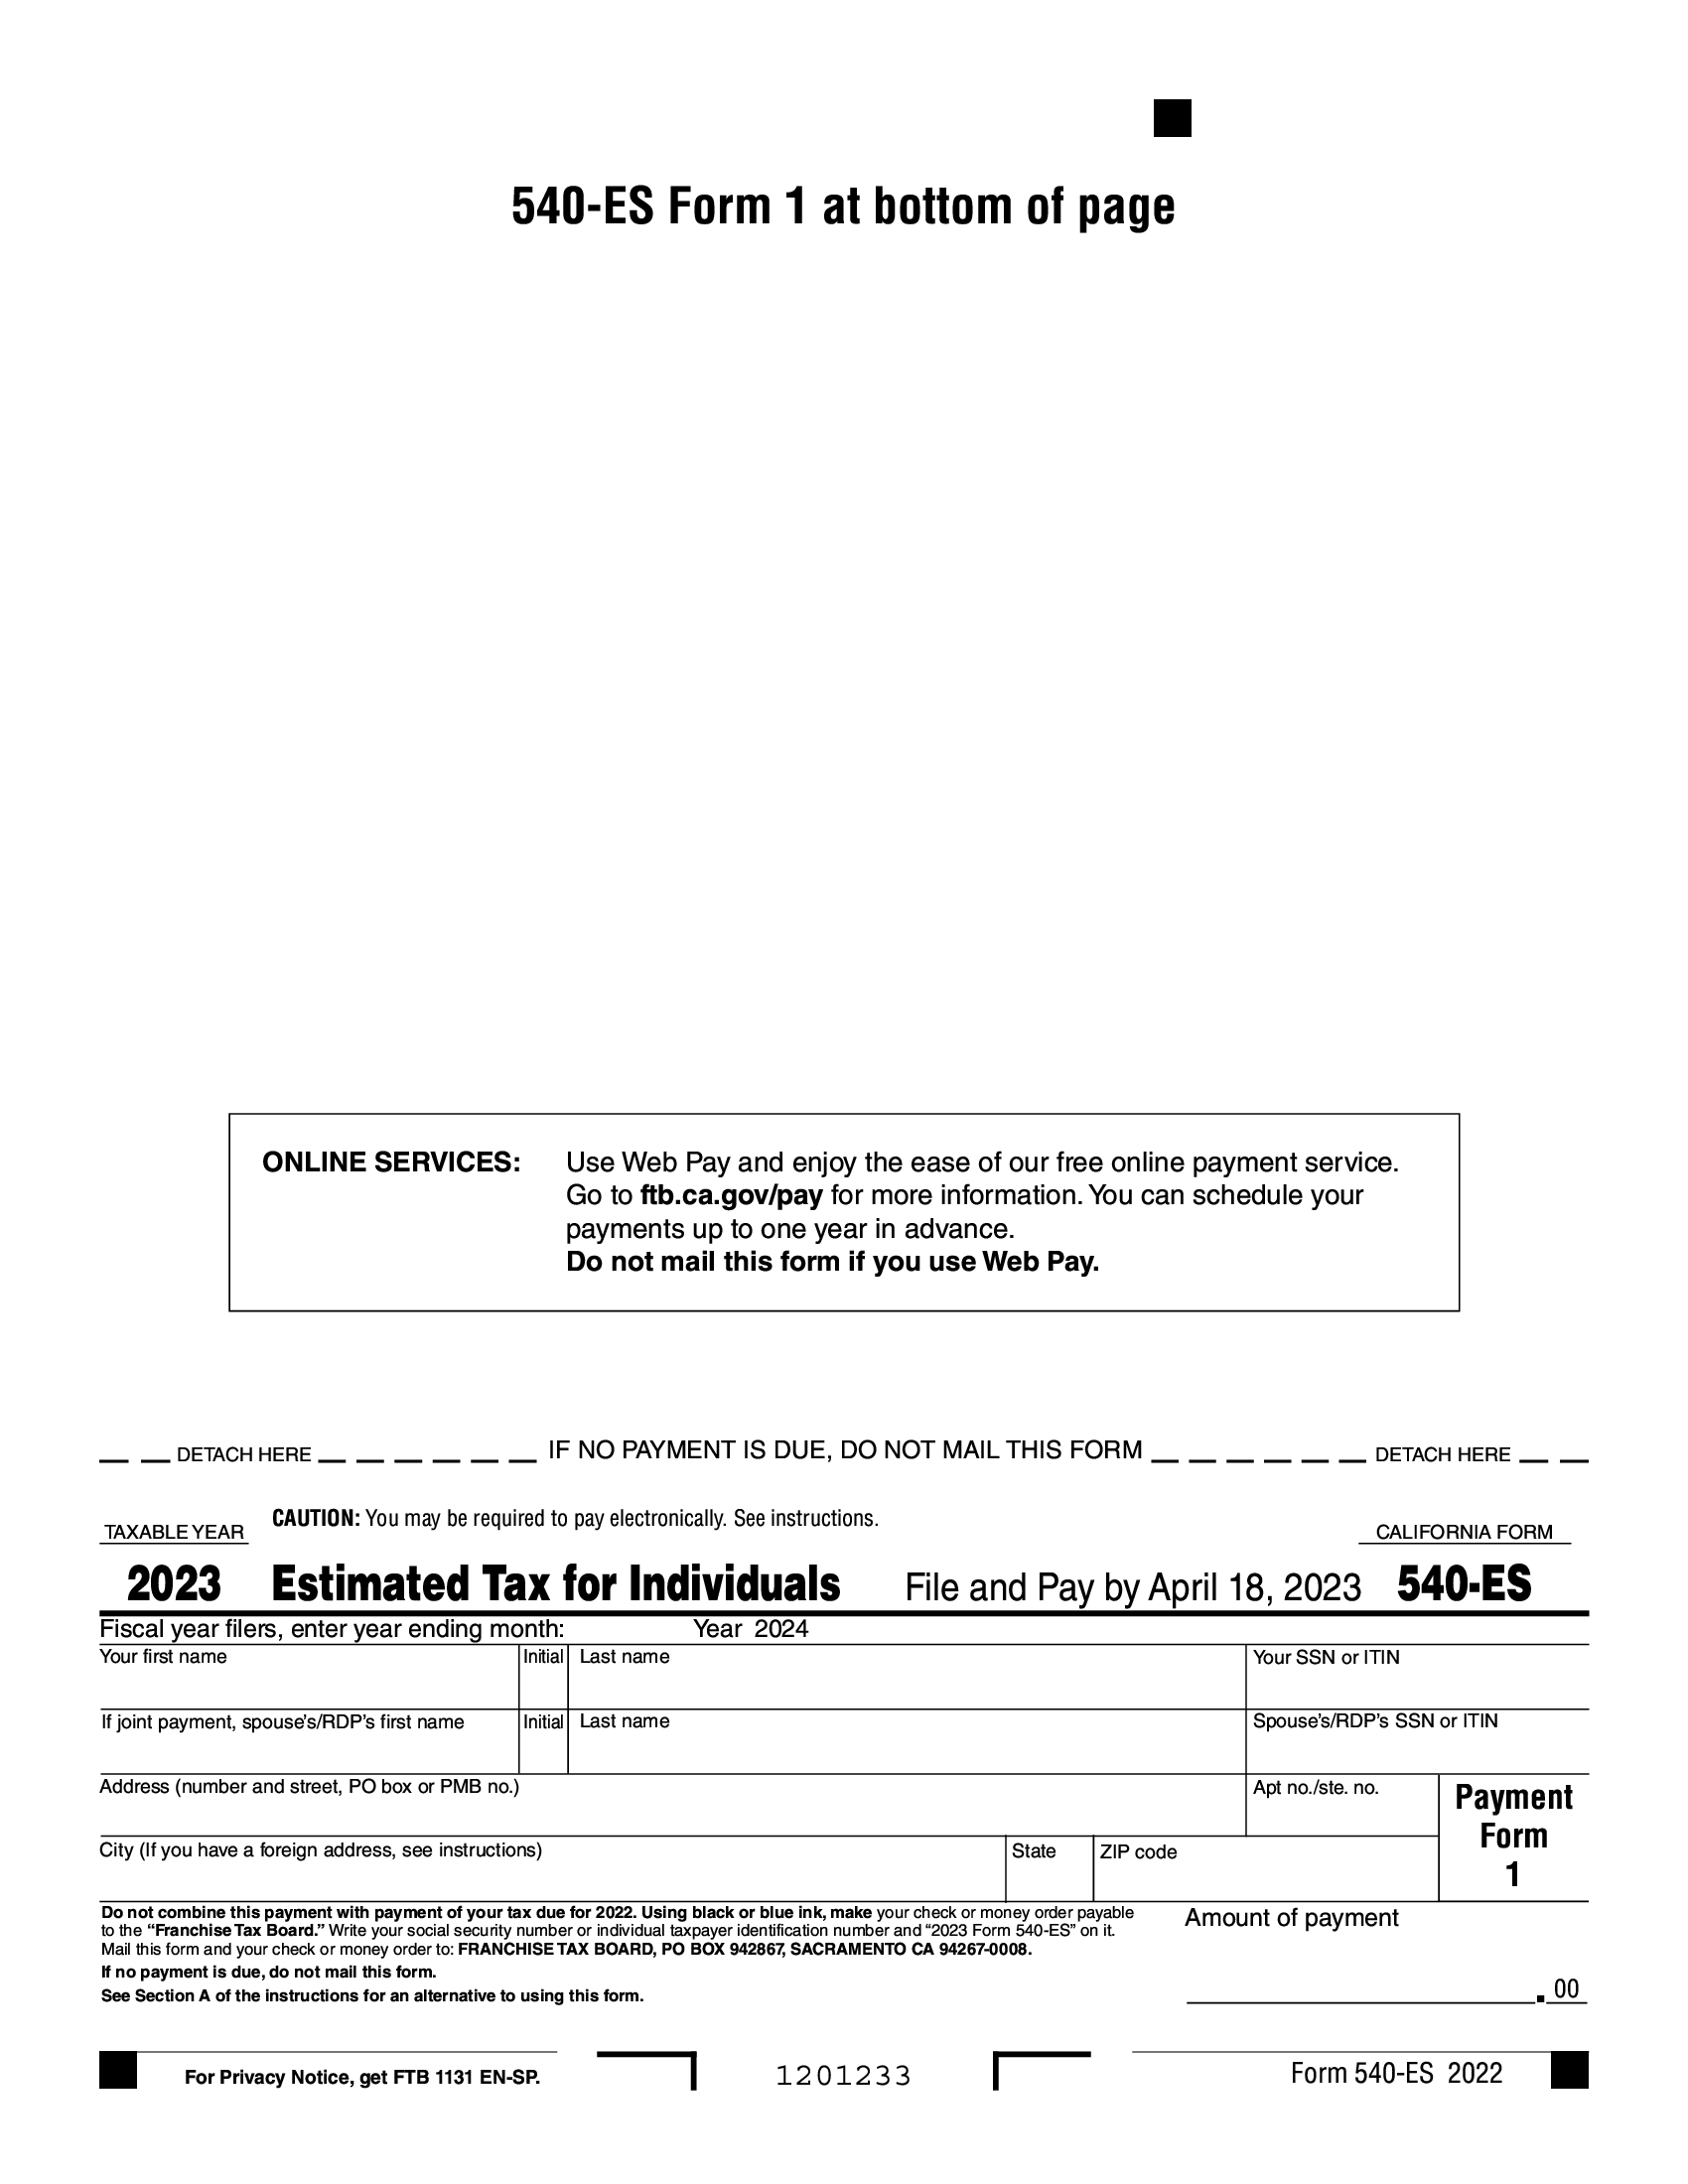 FTB Form 540ES. Estimated Tax for Individuals Forms Docs 2023